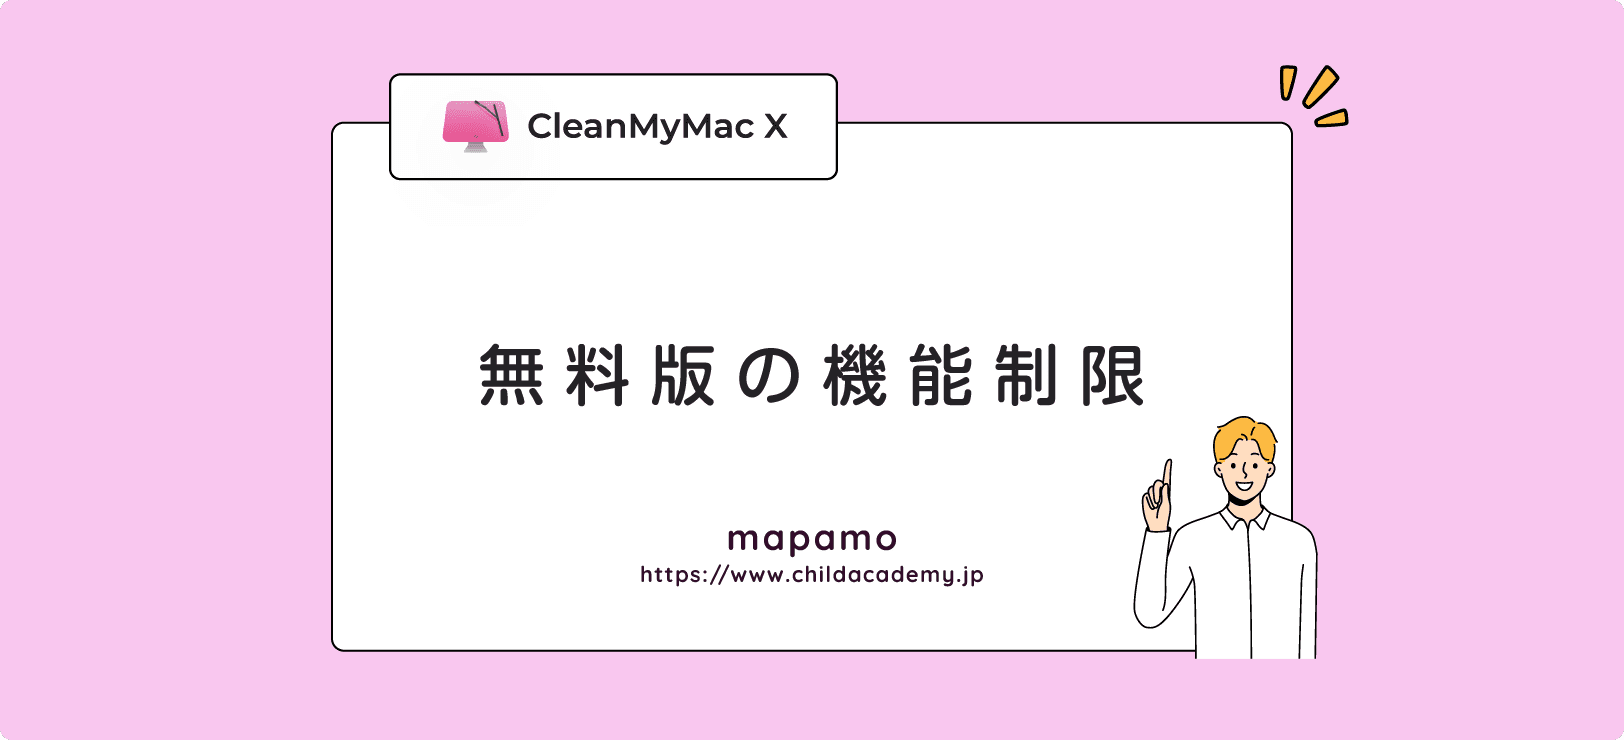 CleanMyMac Xの無料版